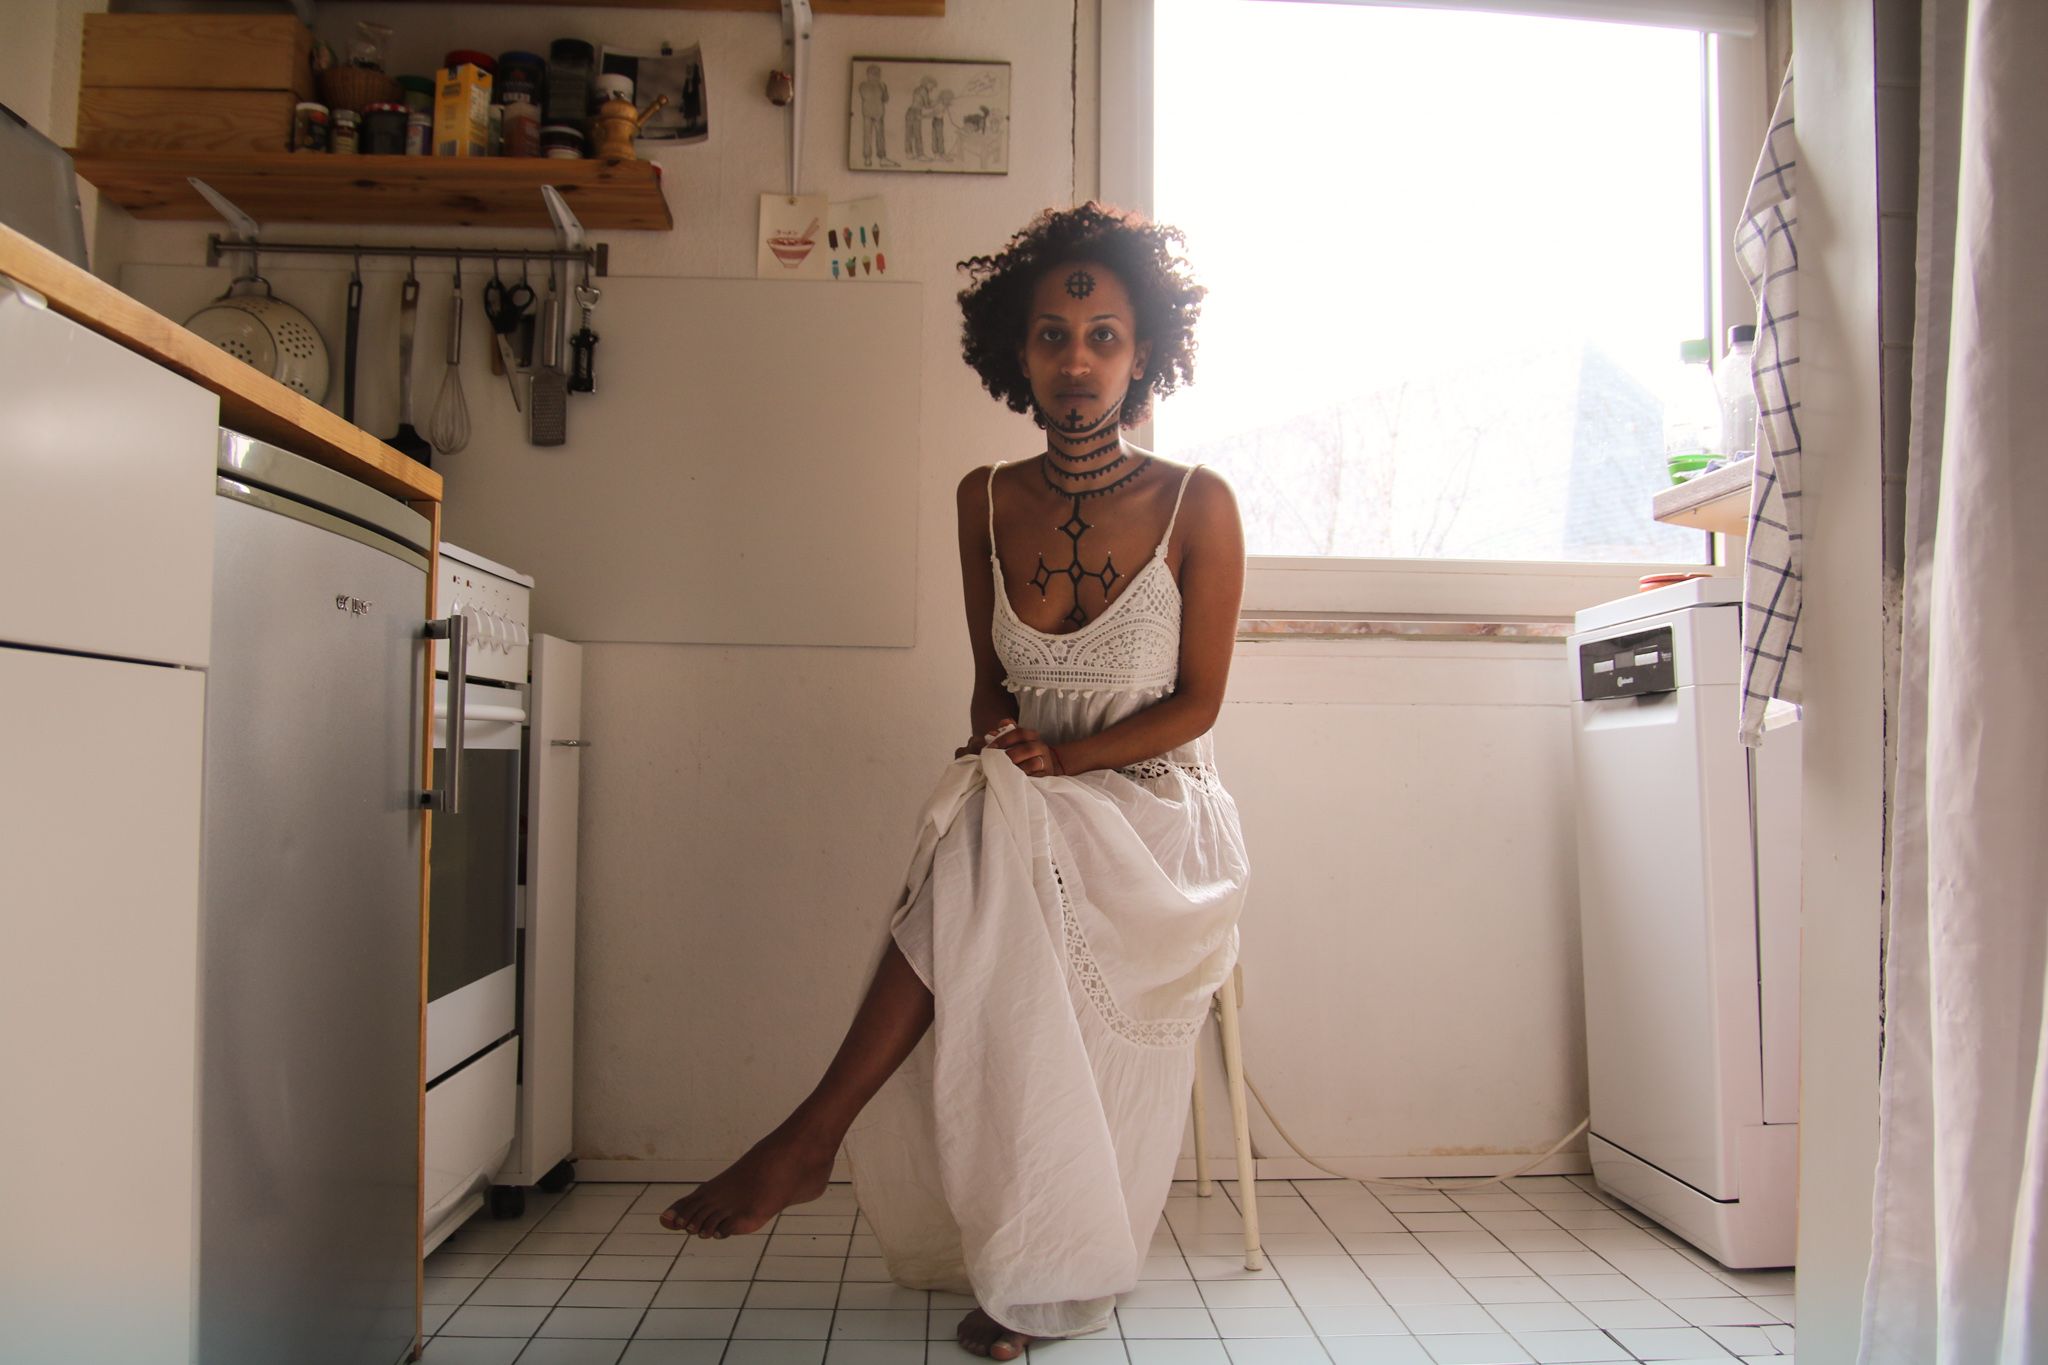 Mittig im Bild in einer hellen Küche sitzt eine Frau mit dem Rücken vor der Küchenwand. Rechts hinter ihr ist ein Fenster. Die Frau trägt ein weißes Kleid. Ihr Brustkorb, Hals und Gesicht sind mit traditionellen äthiopischen Tätowierungen bemalt.